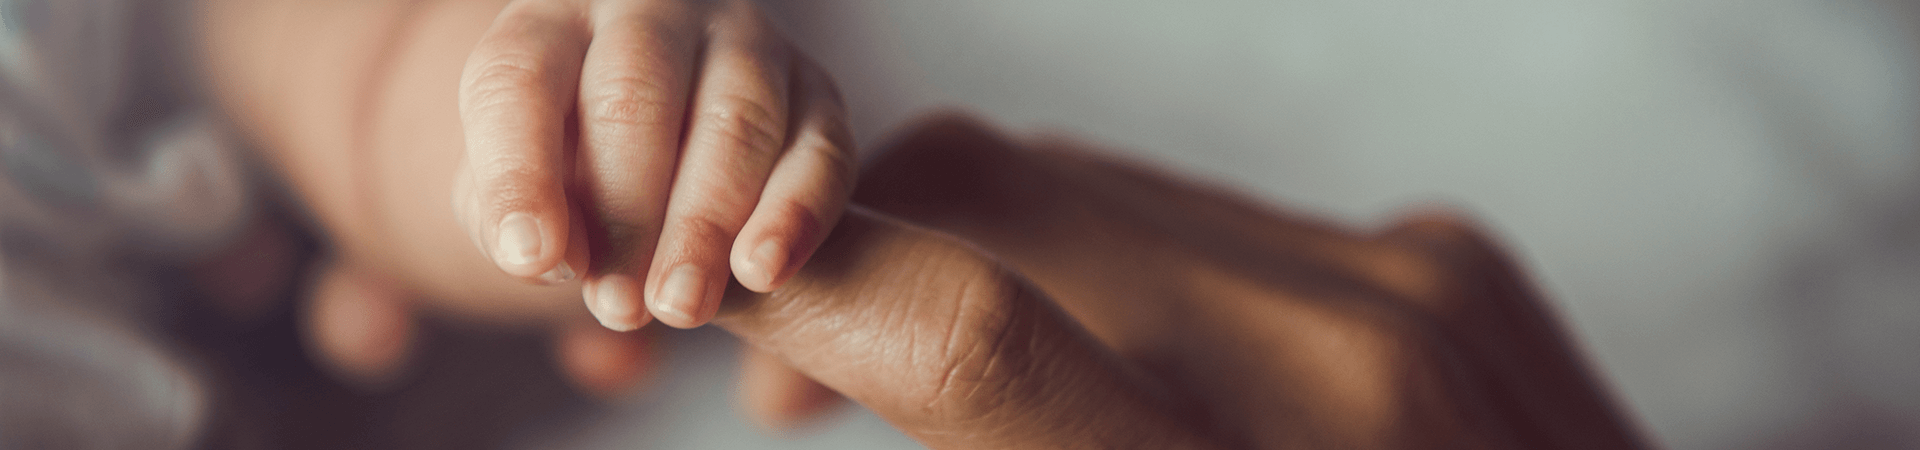 Une main de bébé attrape le doigt d'une main d'adulte